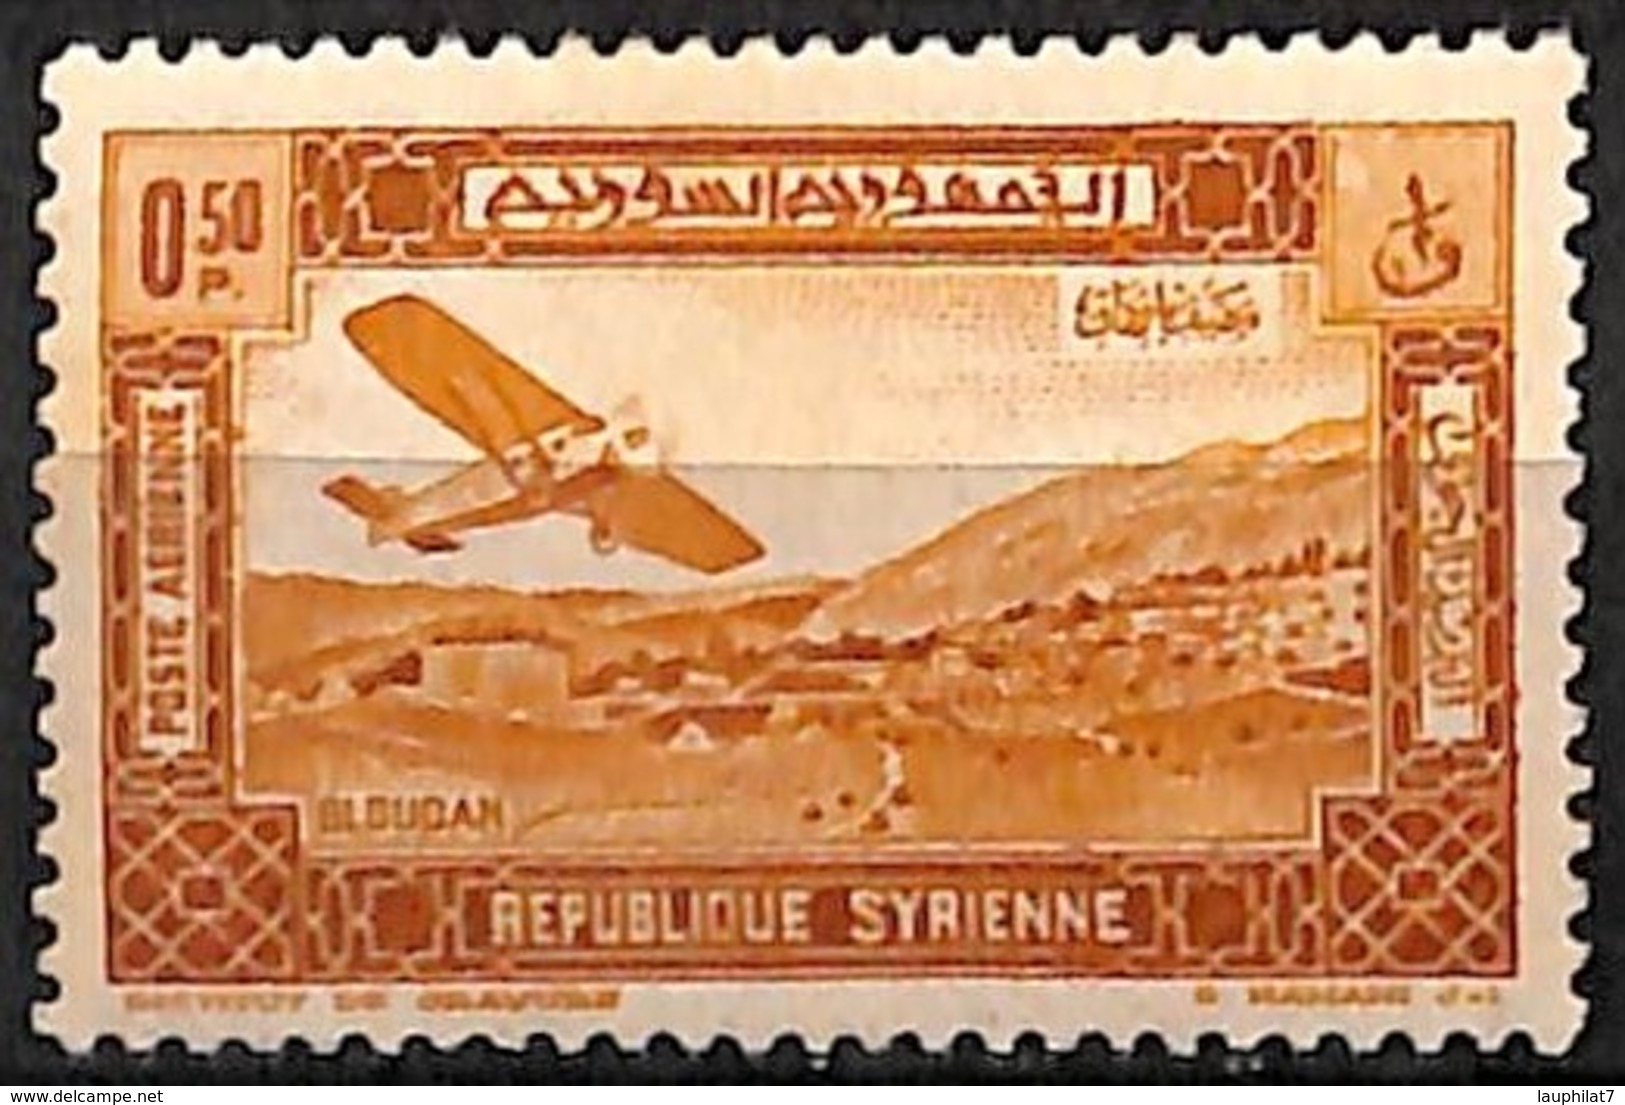 [828226]Syrie 1934 - PA60, 0pi50 Jaune-brun, Rousseur, Colonies, Avion - Poste Aérienne